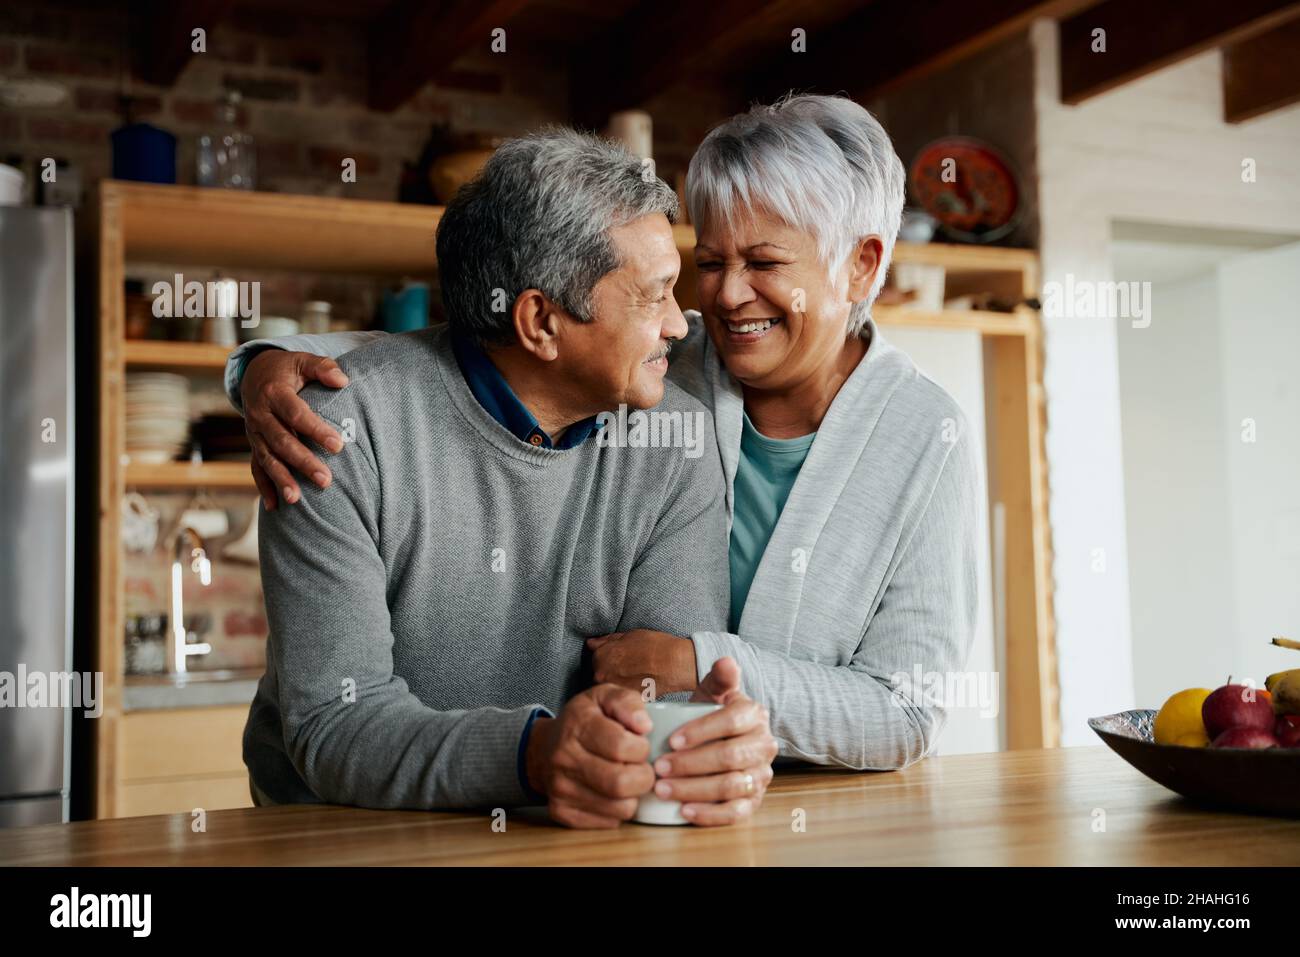 Glücklich pensionierte ältere Birazialpaare lächeln sich gegenseitig an. Frau hält Mann in der modernen Küche. Stockfoto